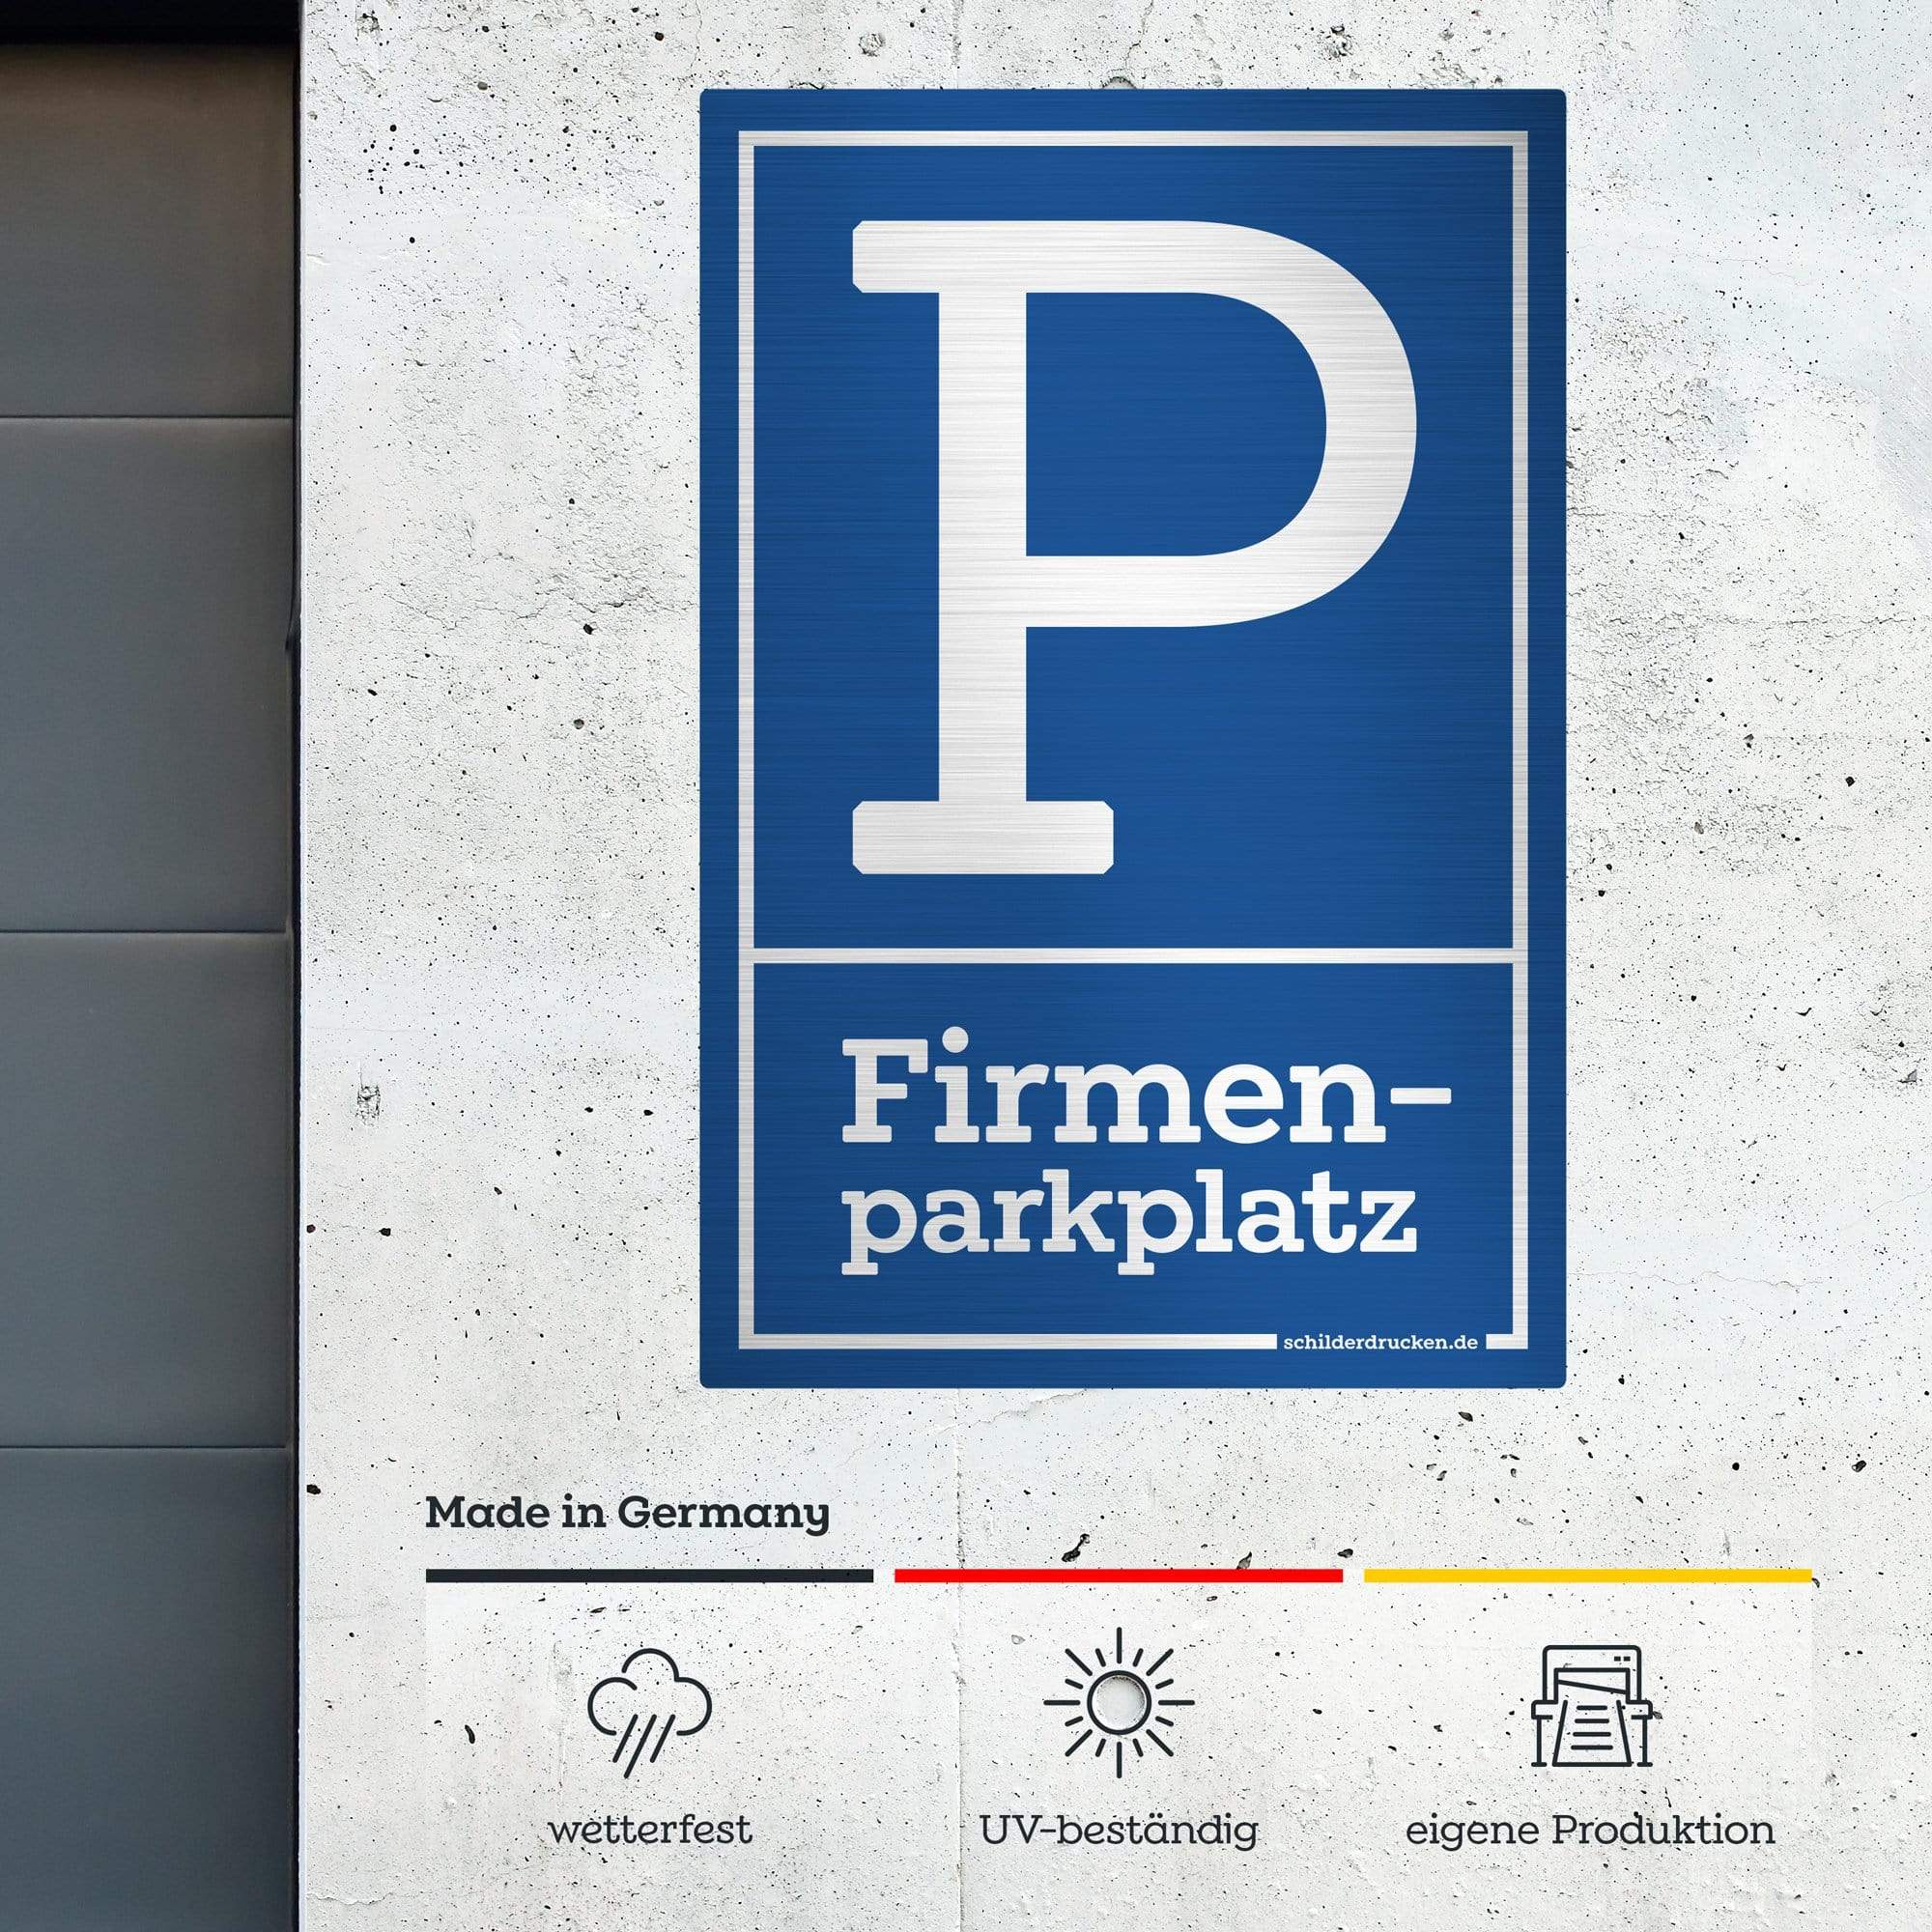 Firmenparkplatz 10 x 15 cm / silber gebürstet / Alu-Dibond online drucken lassen bei schilderdrucken.de